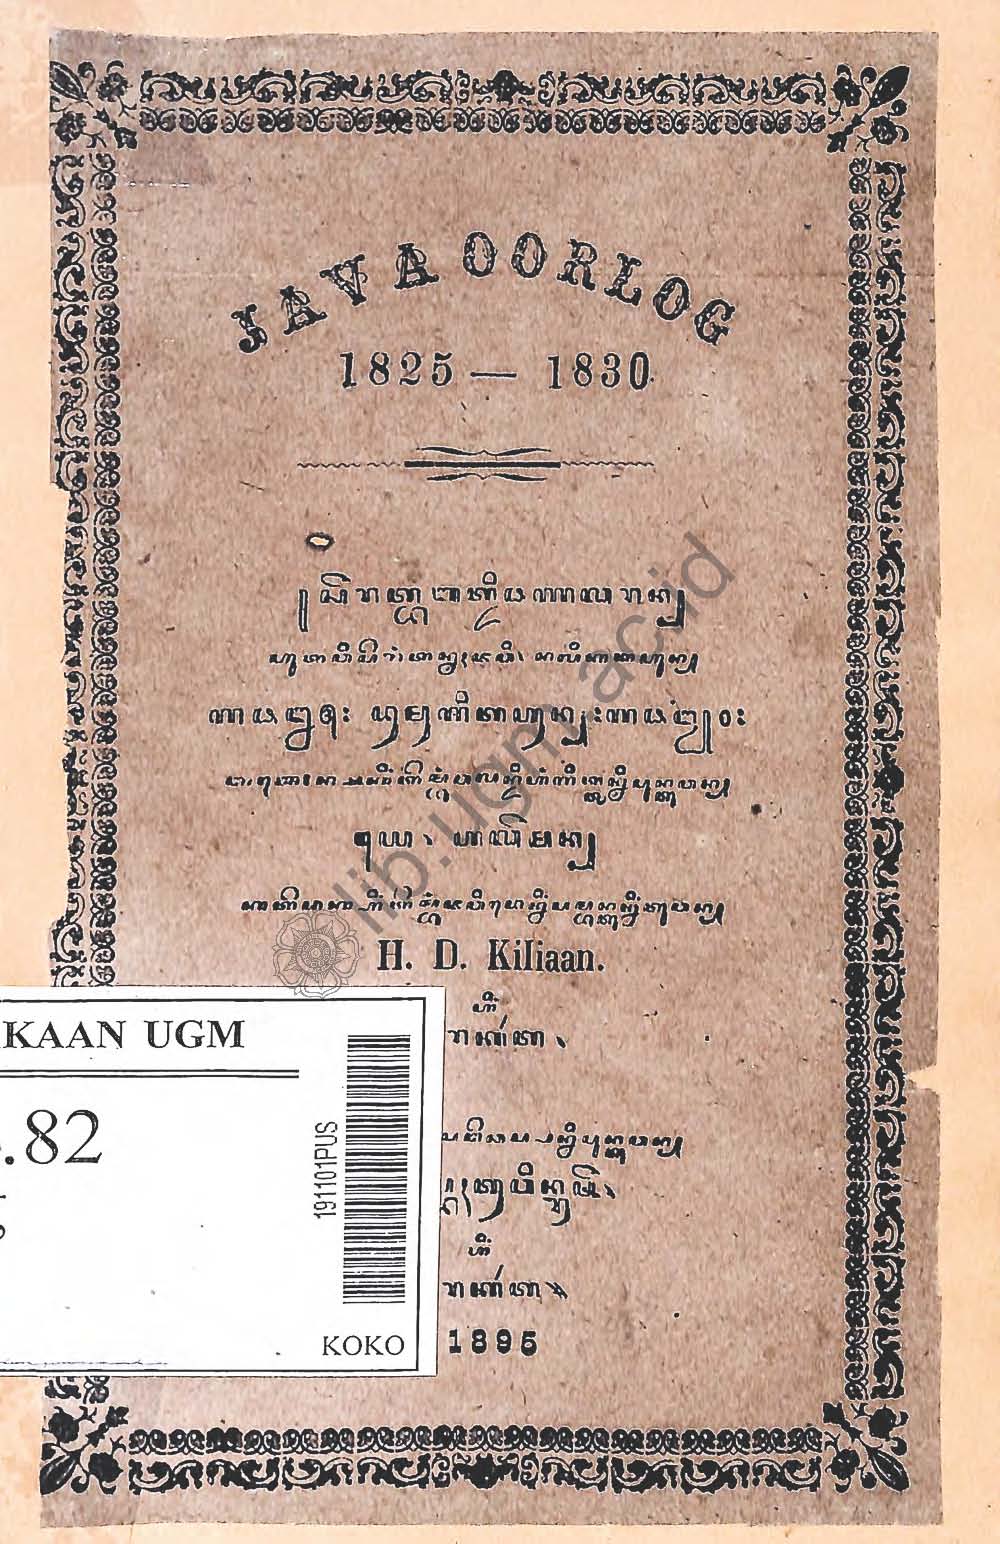 Java oorlog 1825 - 1830 (serat babad Dipanagaran). Terbit 1895